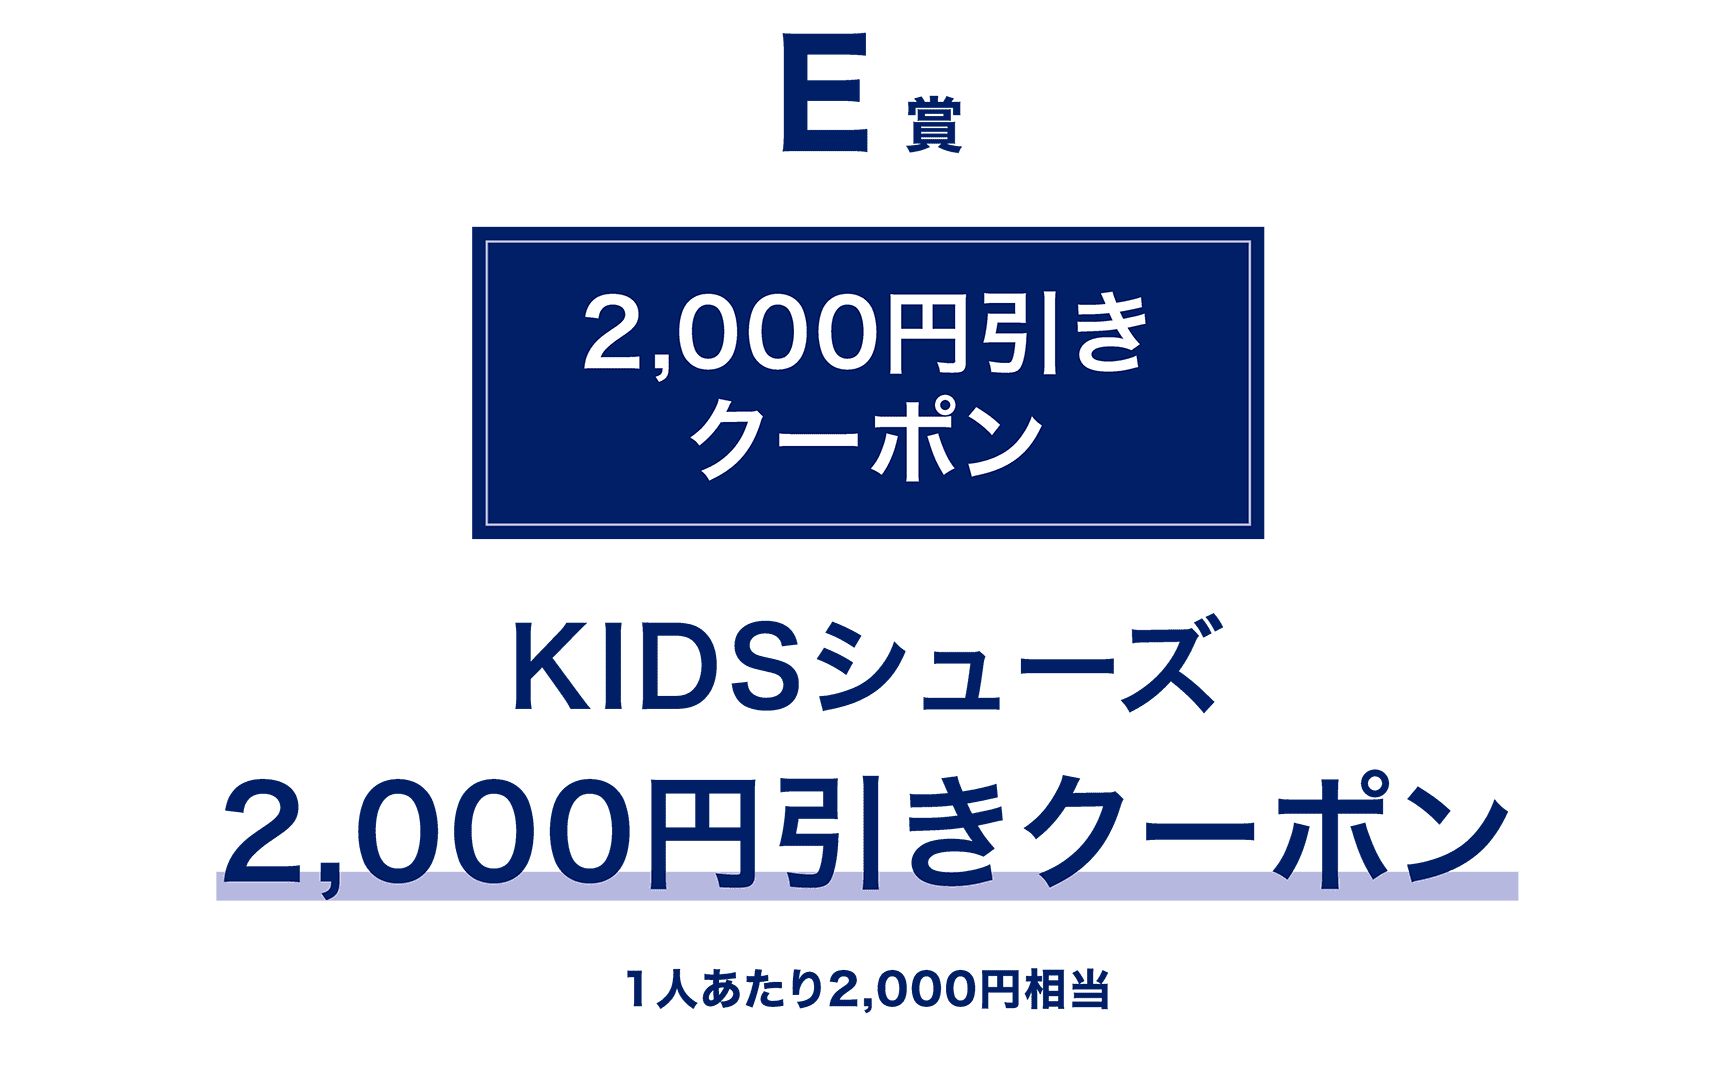 E賞 2,000円引き KIDSシューズ 2,000円引きクーポン 1人あたり2,000円相当